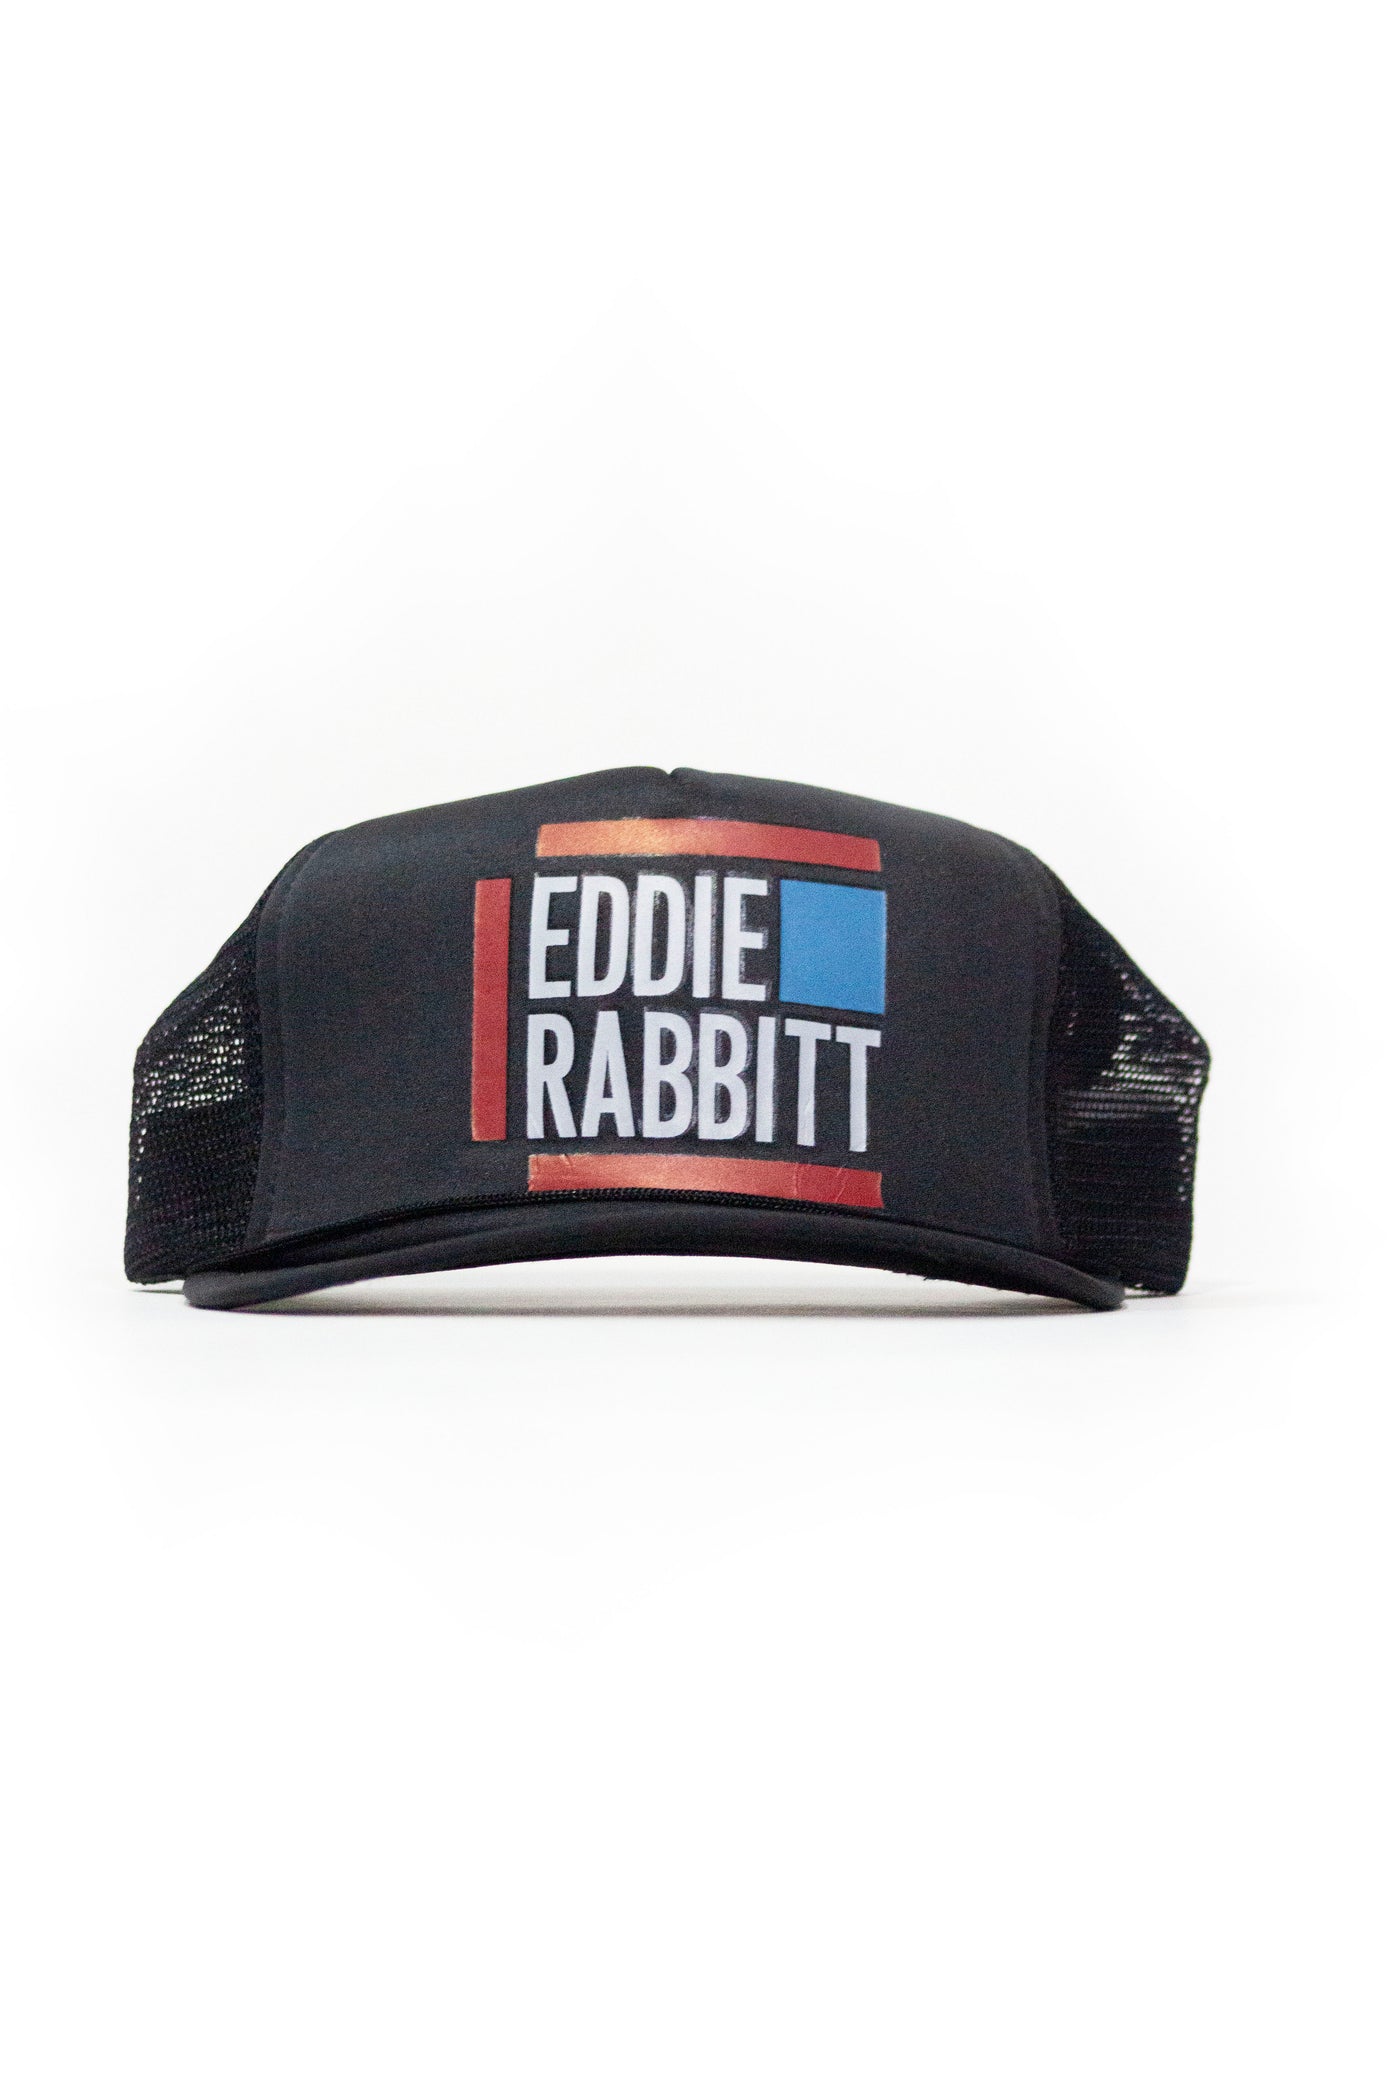 Vintage 70s Eddie Rabbitt Trucker Hat